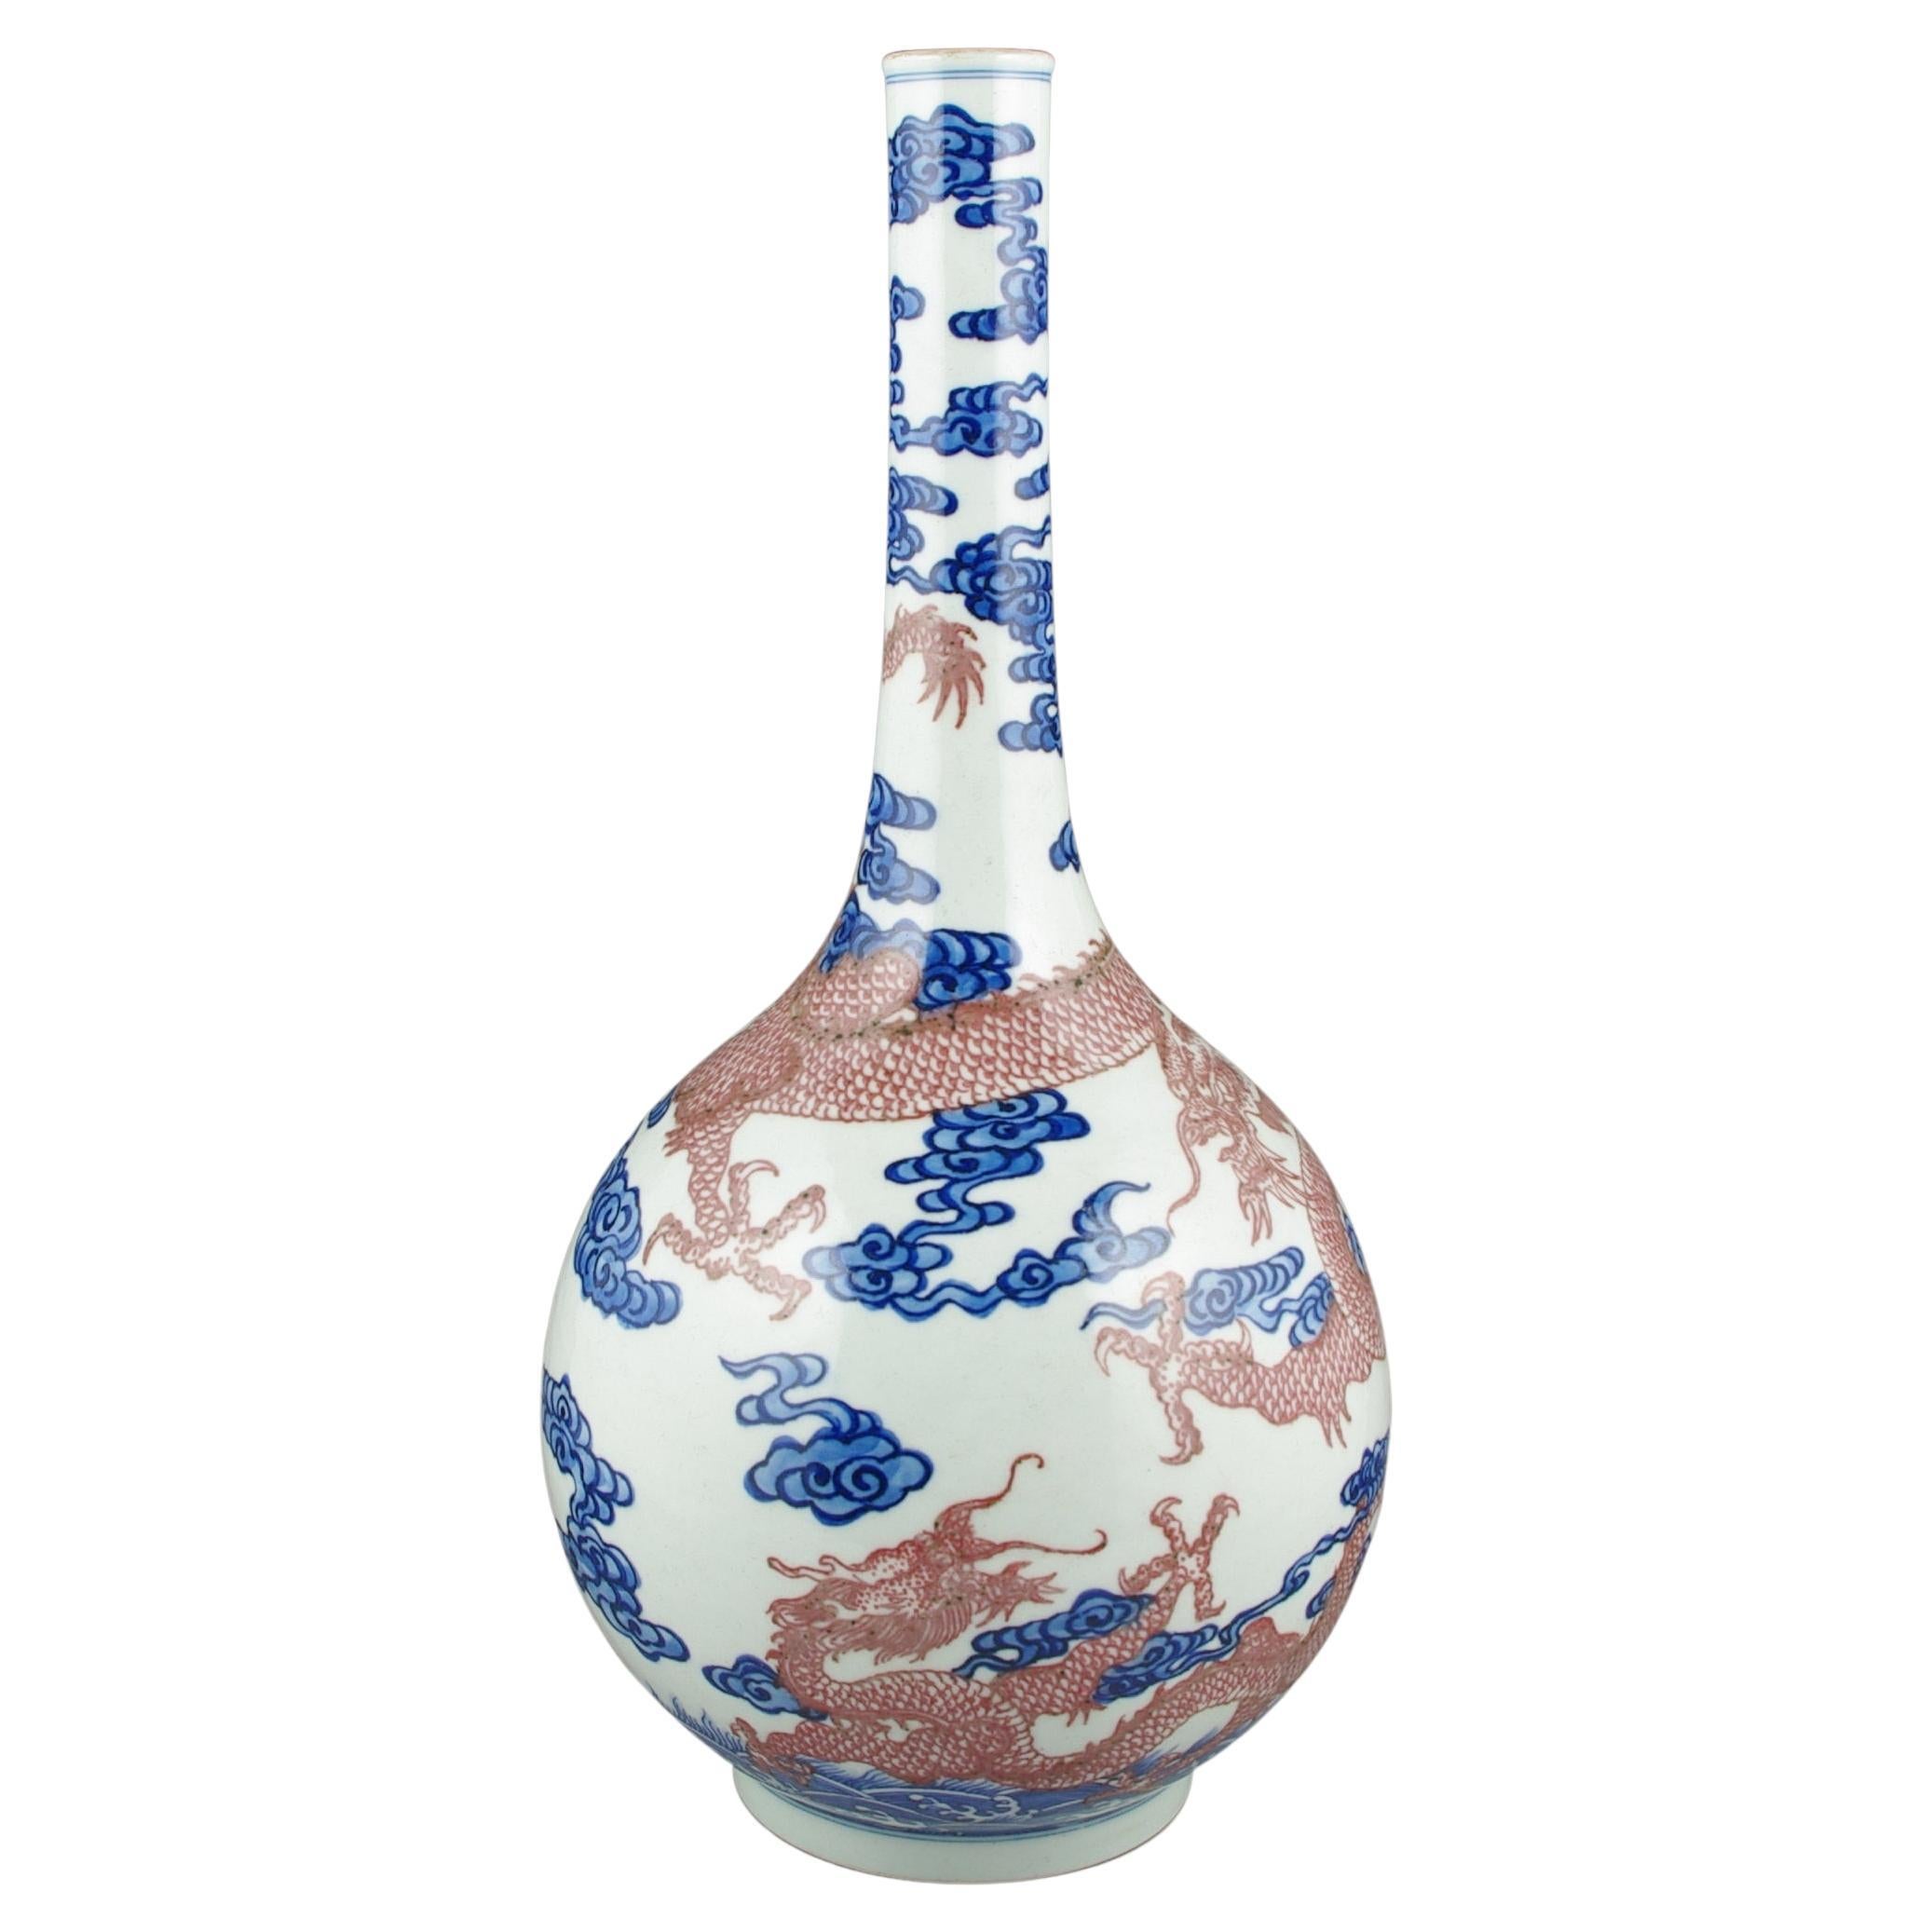 Nous sommes ravis de vous présenter ce vase bouteille à long col en porcelaine chinoise, splendide représentation d'un artisanat de maître et d'une tradition artistique. Le vase séduit par sa représentation complexe de deux dragons écailleux à